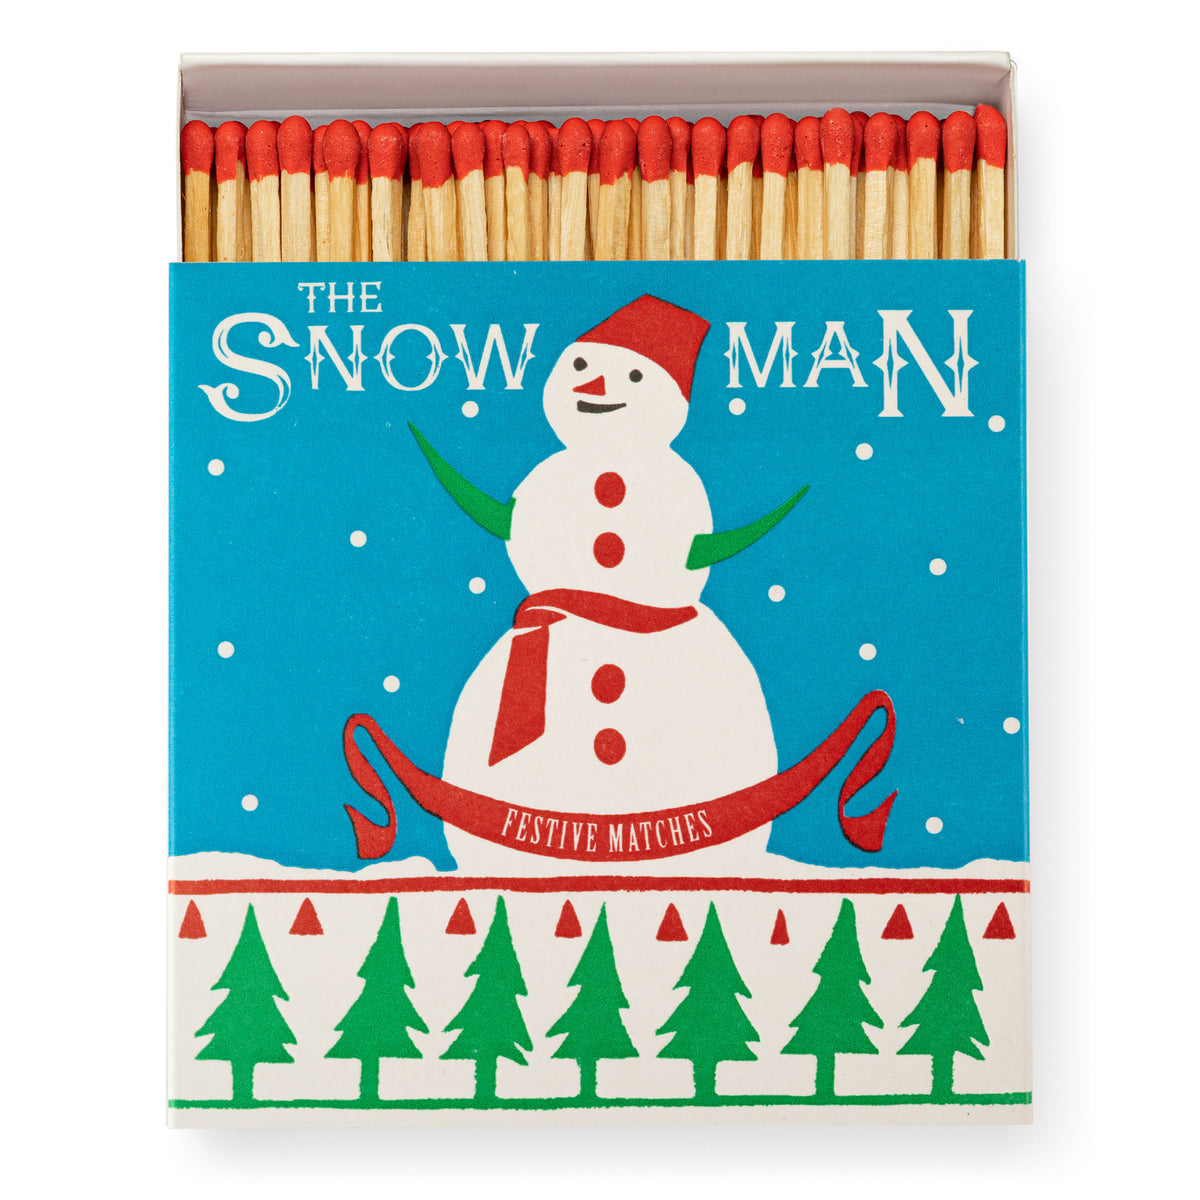 Archivist The Snowman Matches